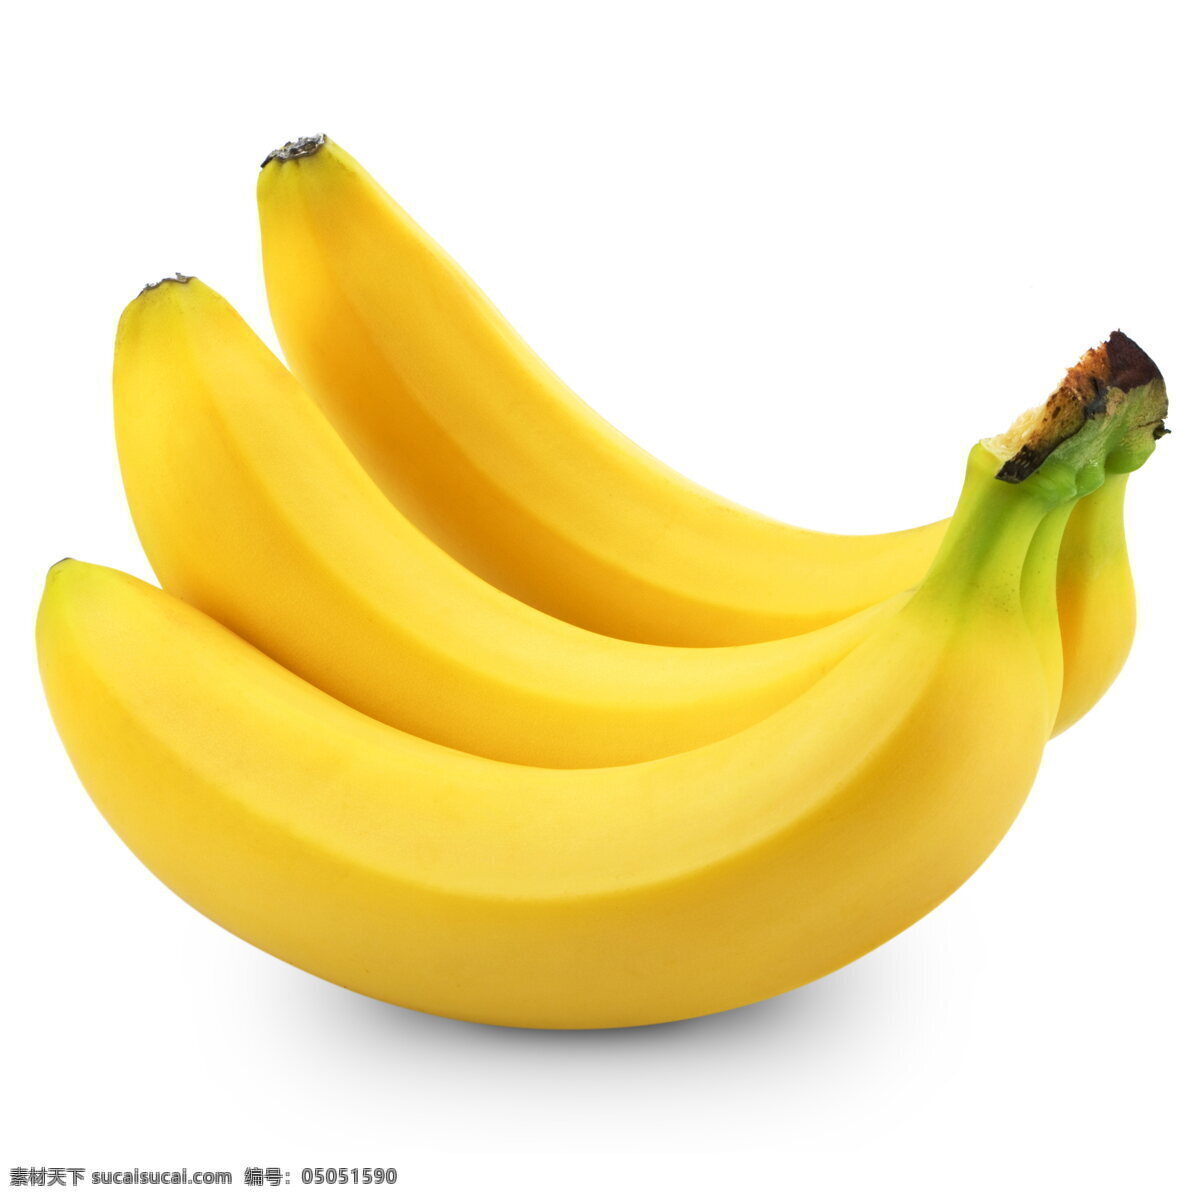 黄色香蕉 黄色 香蕉 黄色水果 果皮 香蕉皮 新鲜水果 美味 美食 新鲜 水果 食物 点心 酒水 餐饮美食 食物原料